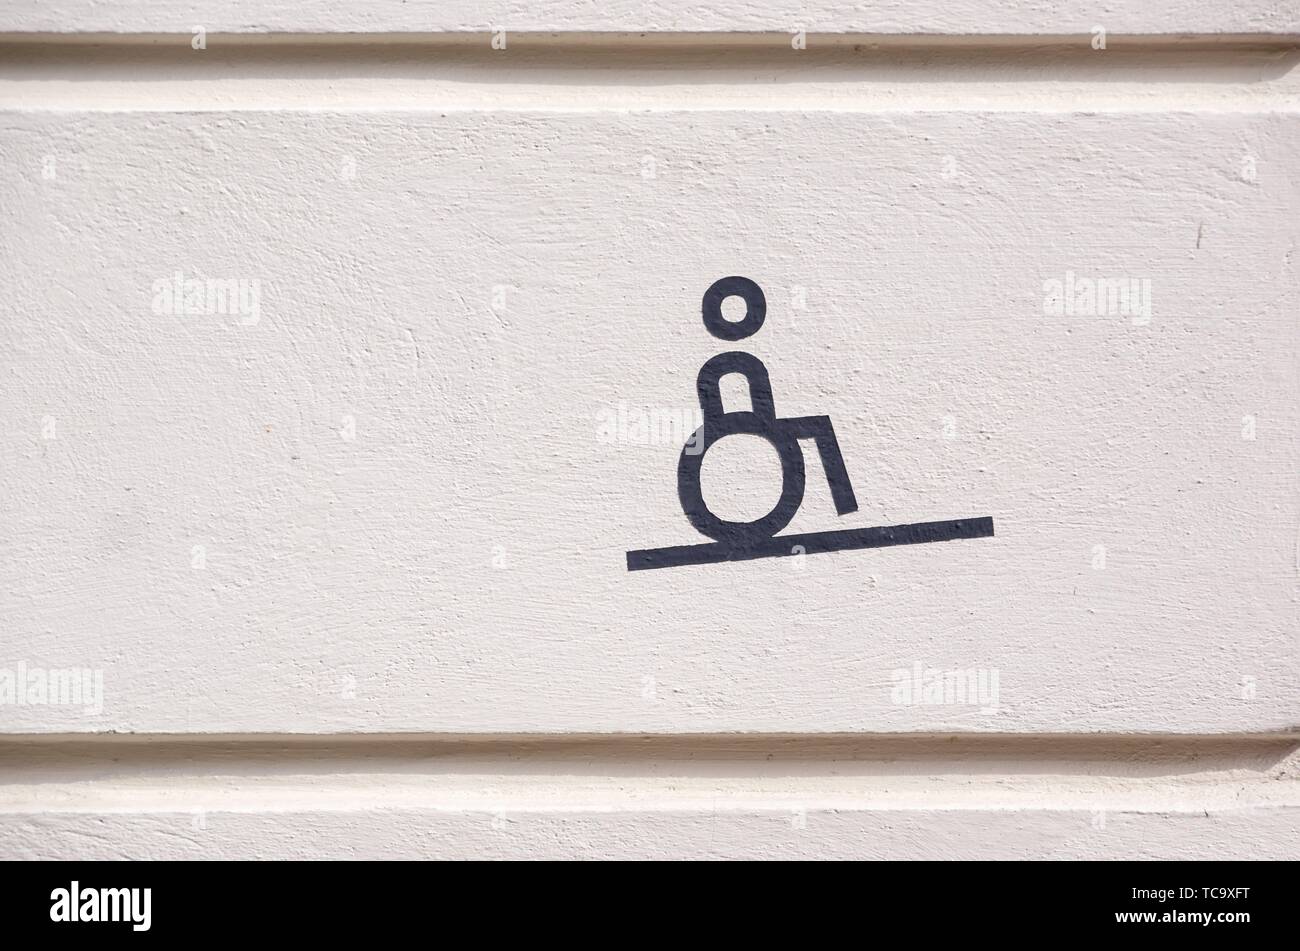 Symbol für Rollstuhlfahrer zeigt Barrierefreiheit an. Wheelchair accessibility symbol. Stock Photo